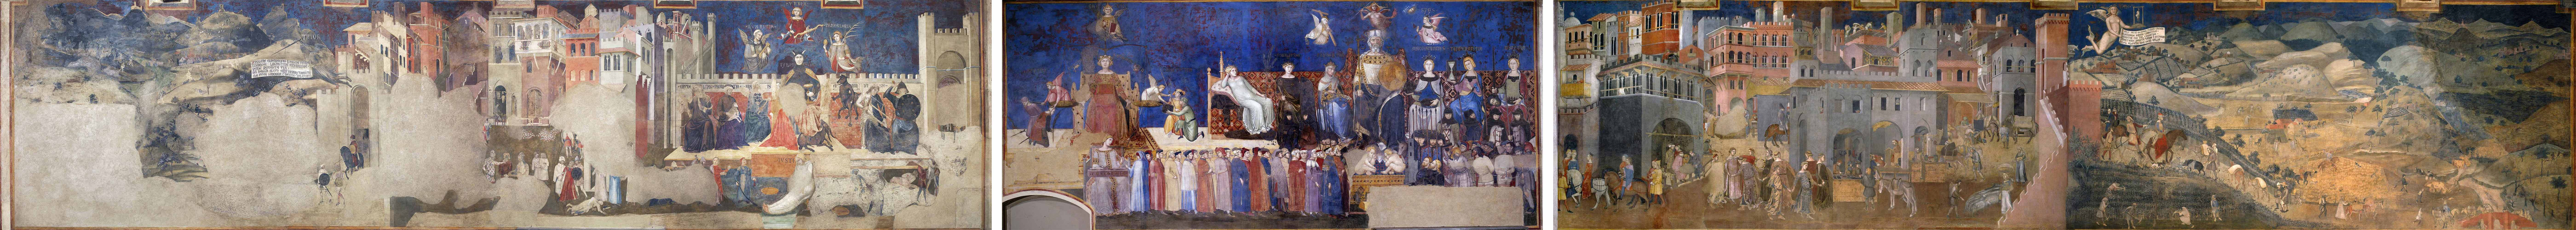 Reproduction des trois pans de la fresque « Allégorie et effets du Bon et du Mauvais Gouvernement » (1338-1339) d’Ambrogio Lorenzetti.